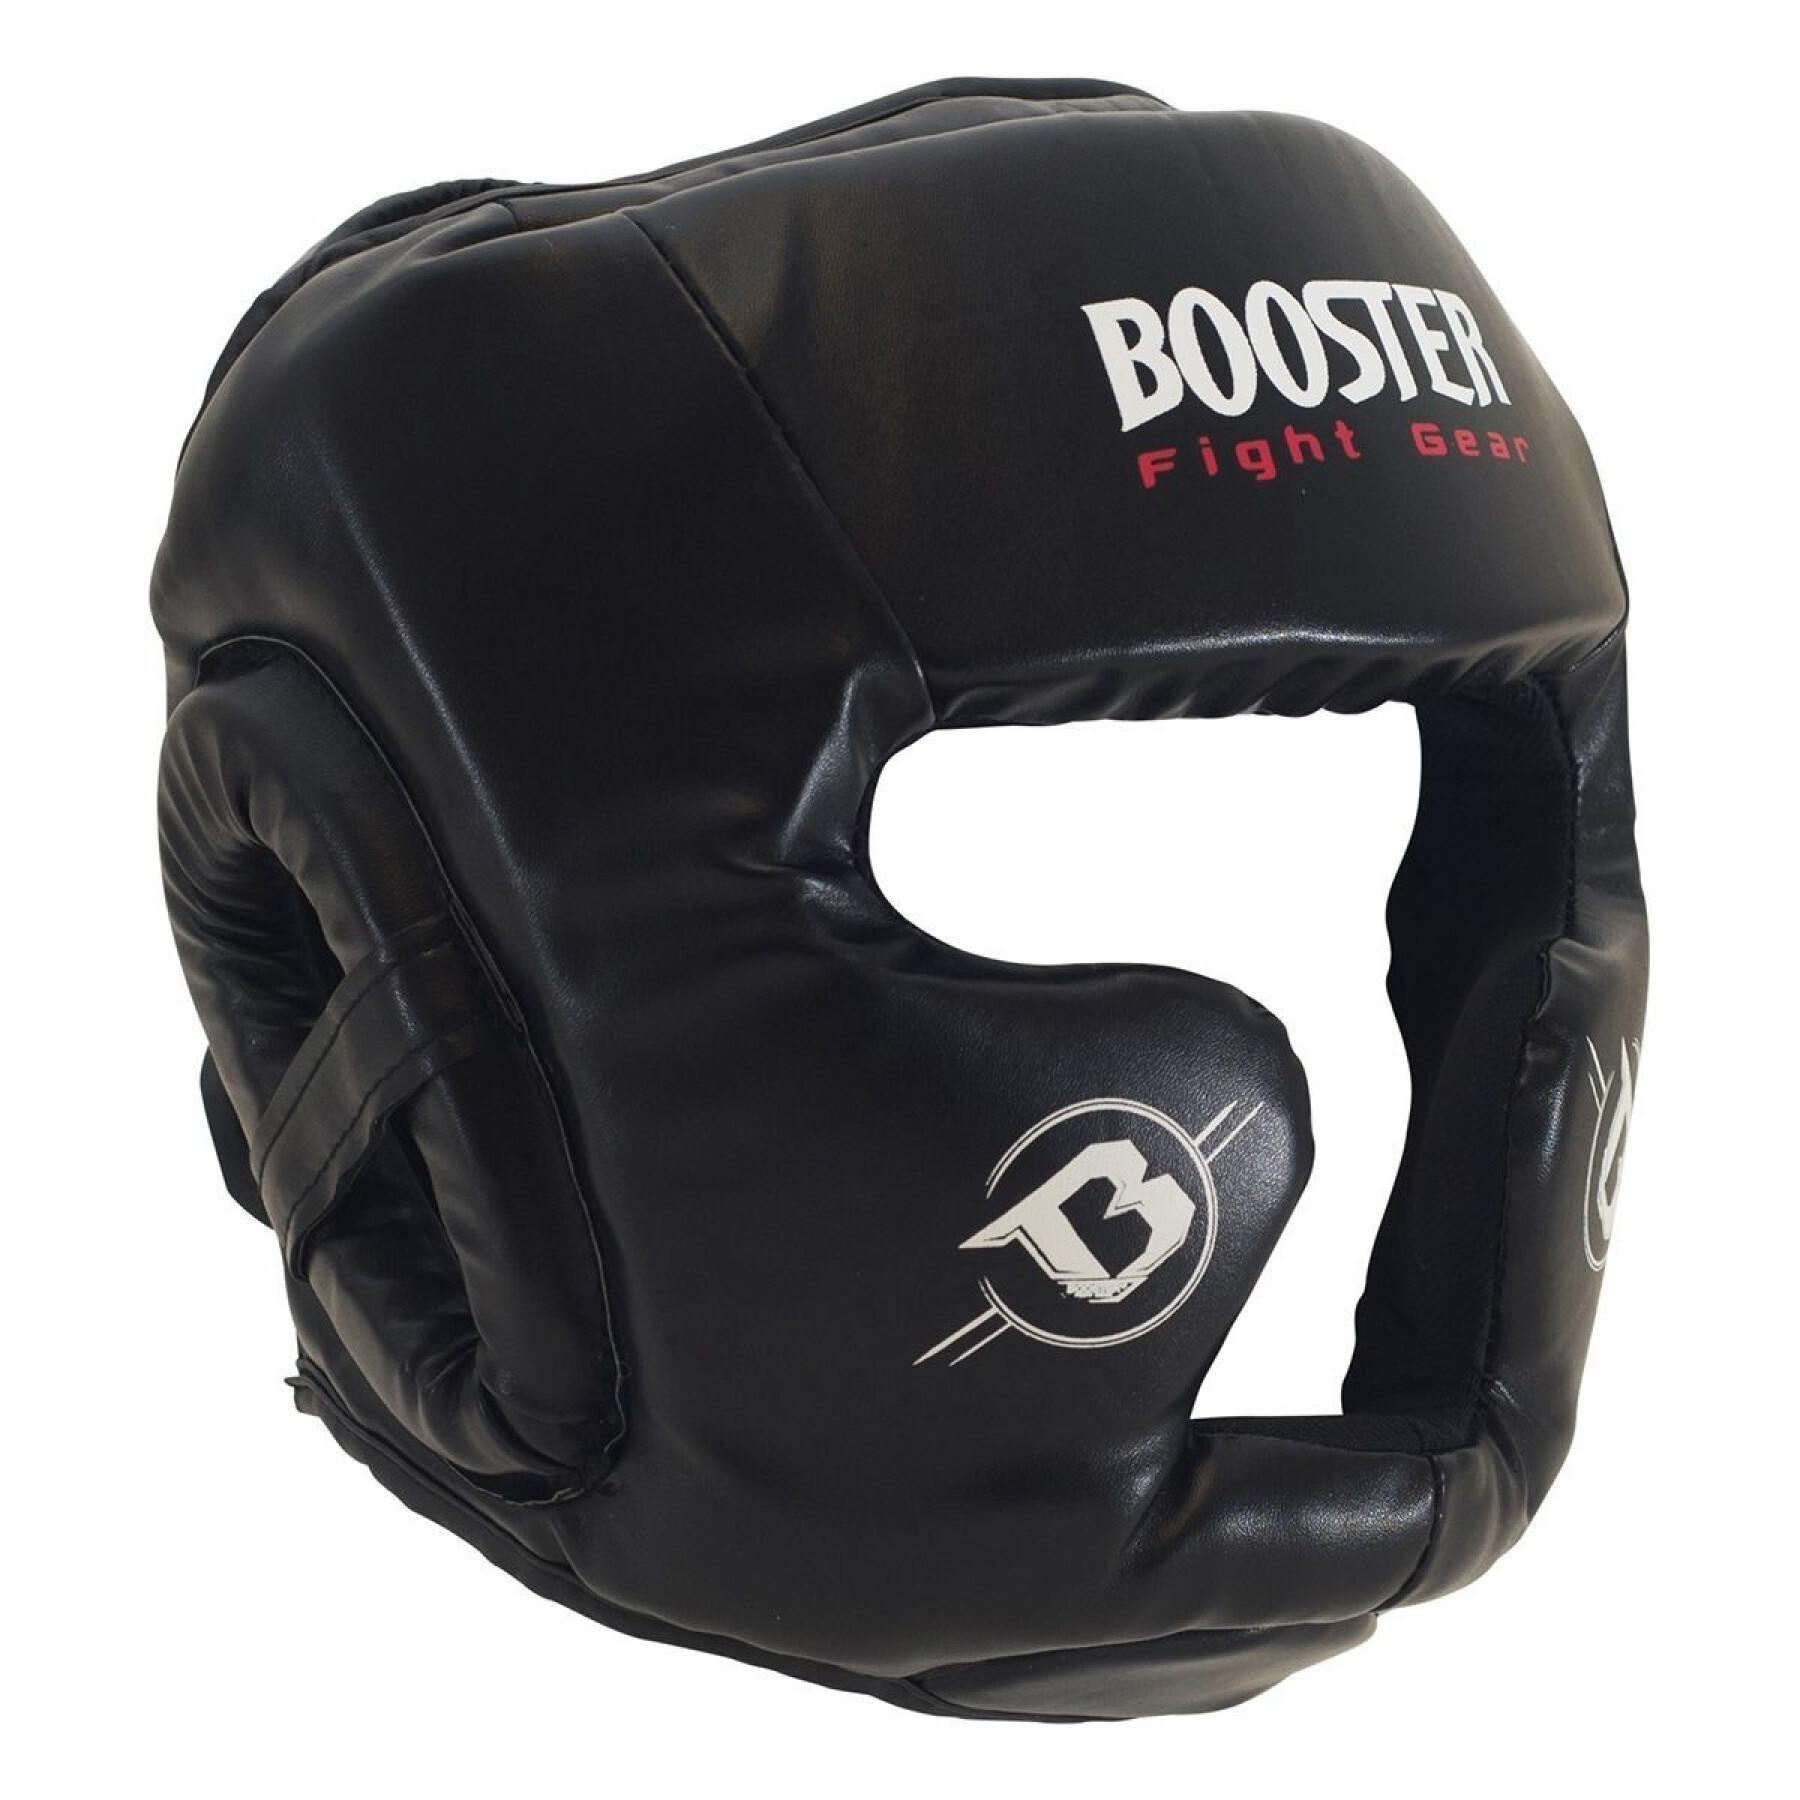 Casco da boxe Booster Fight Gear Hgl B 2